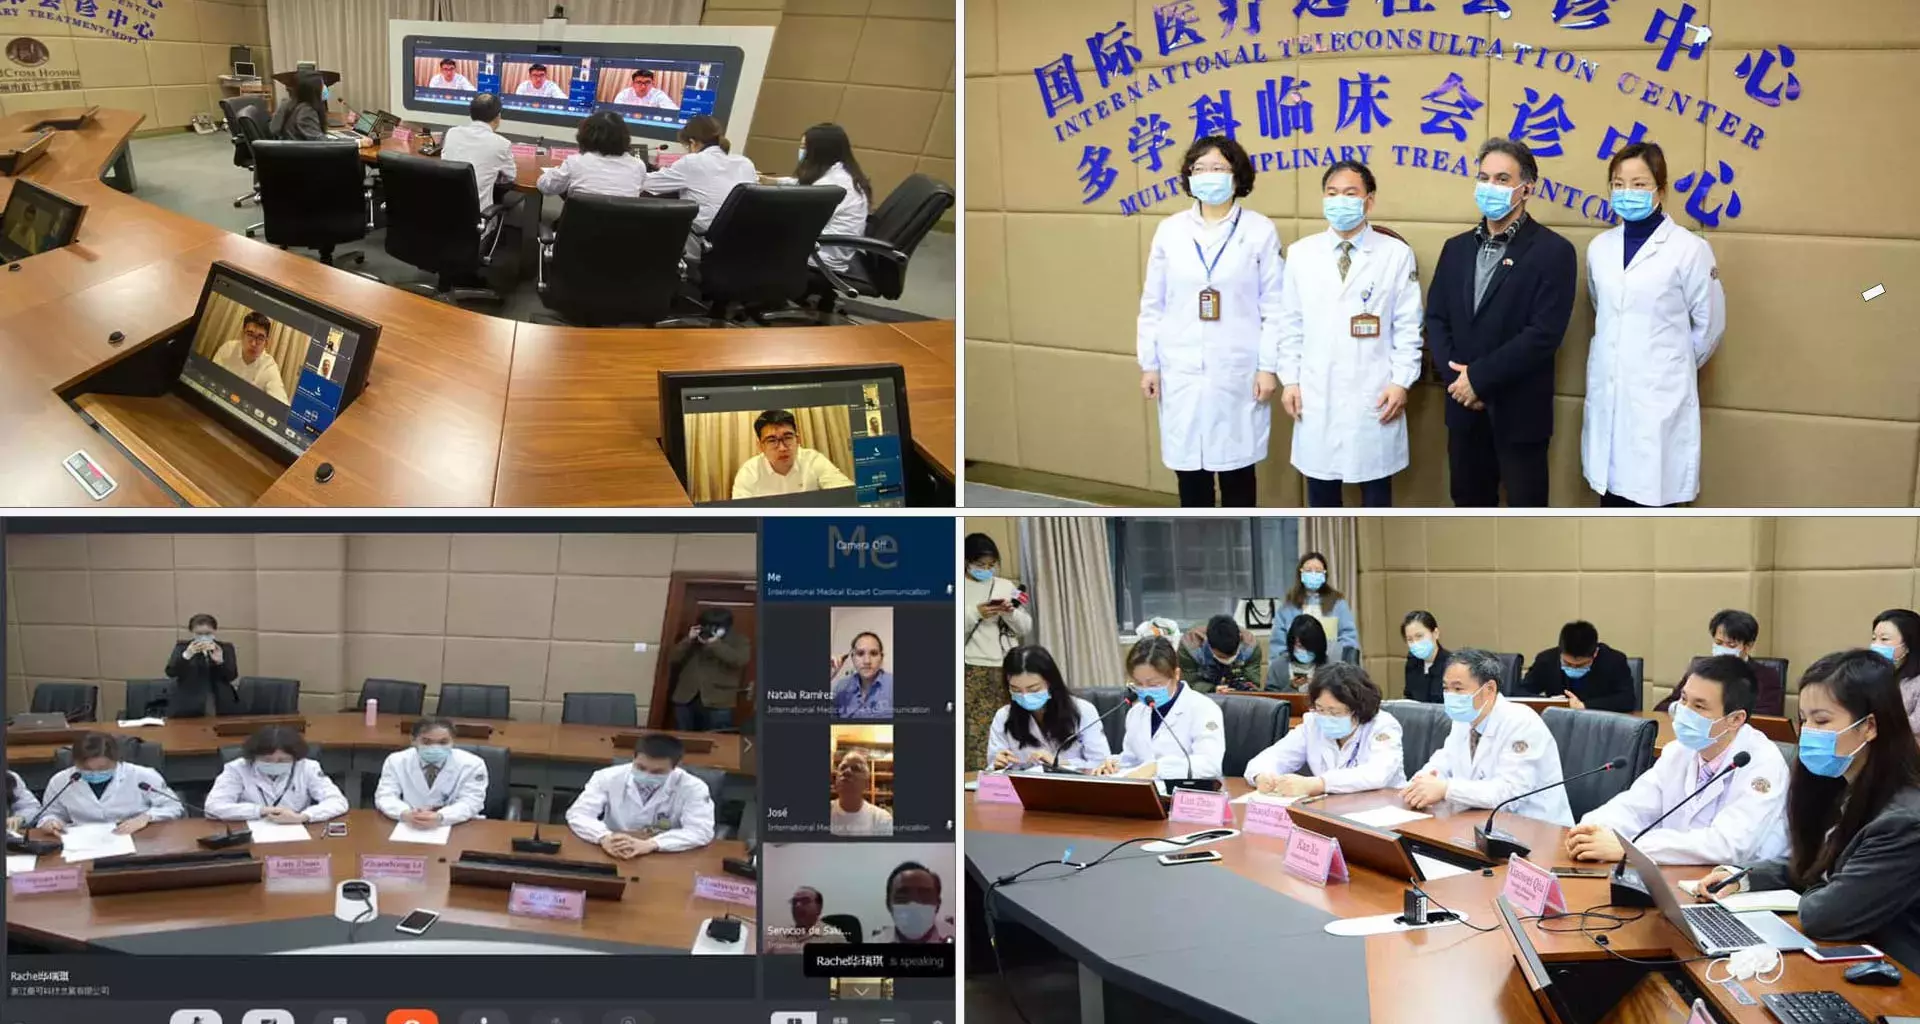 Médicos chinos y mexicanos compartieron experiencias a través de videoconferencia.